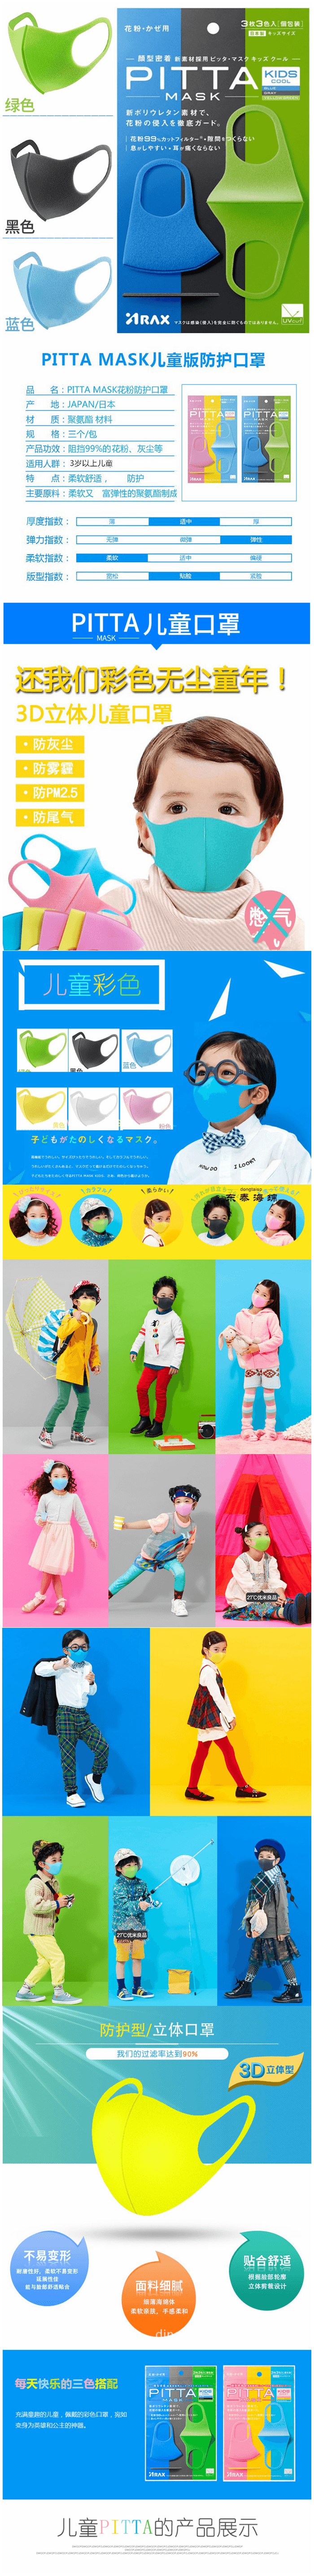 【日本直效郵件】日本PITTA MASK 立體防塵防花粉口罩 兒童口罩 3色入 3枚裝